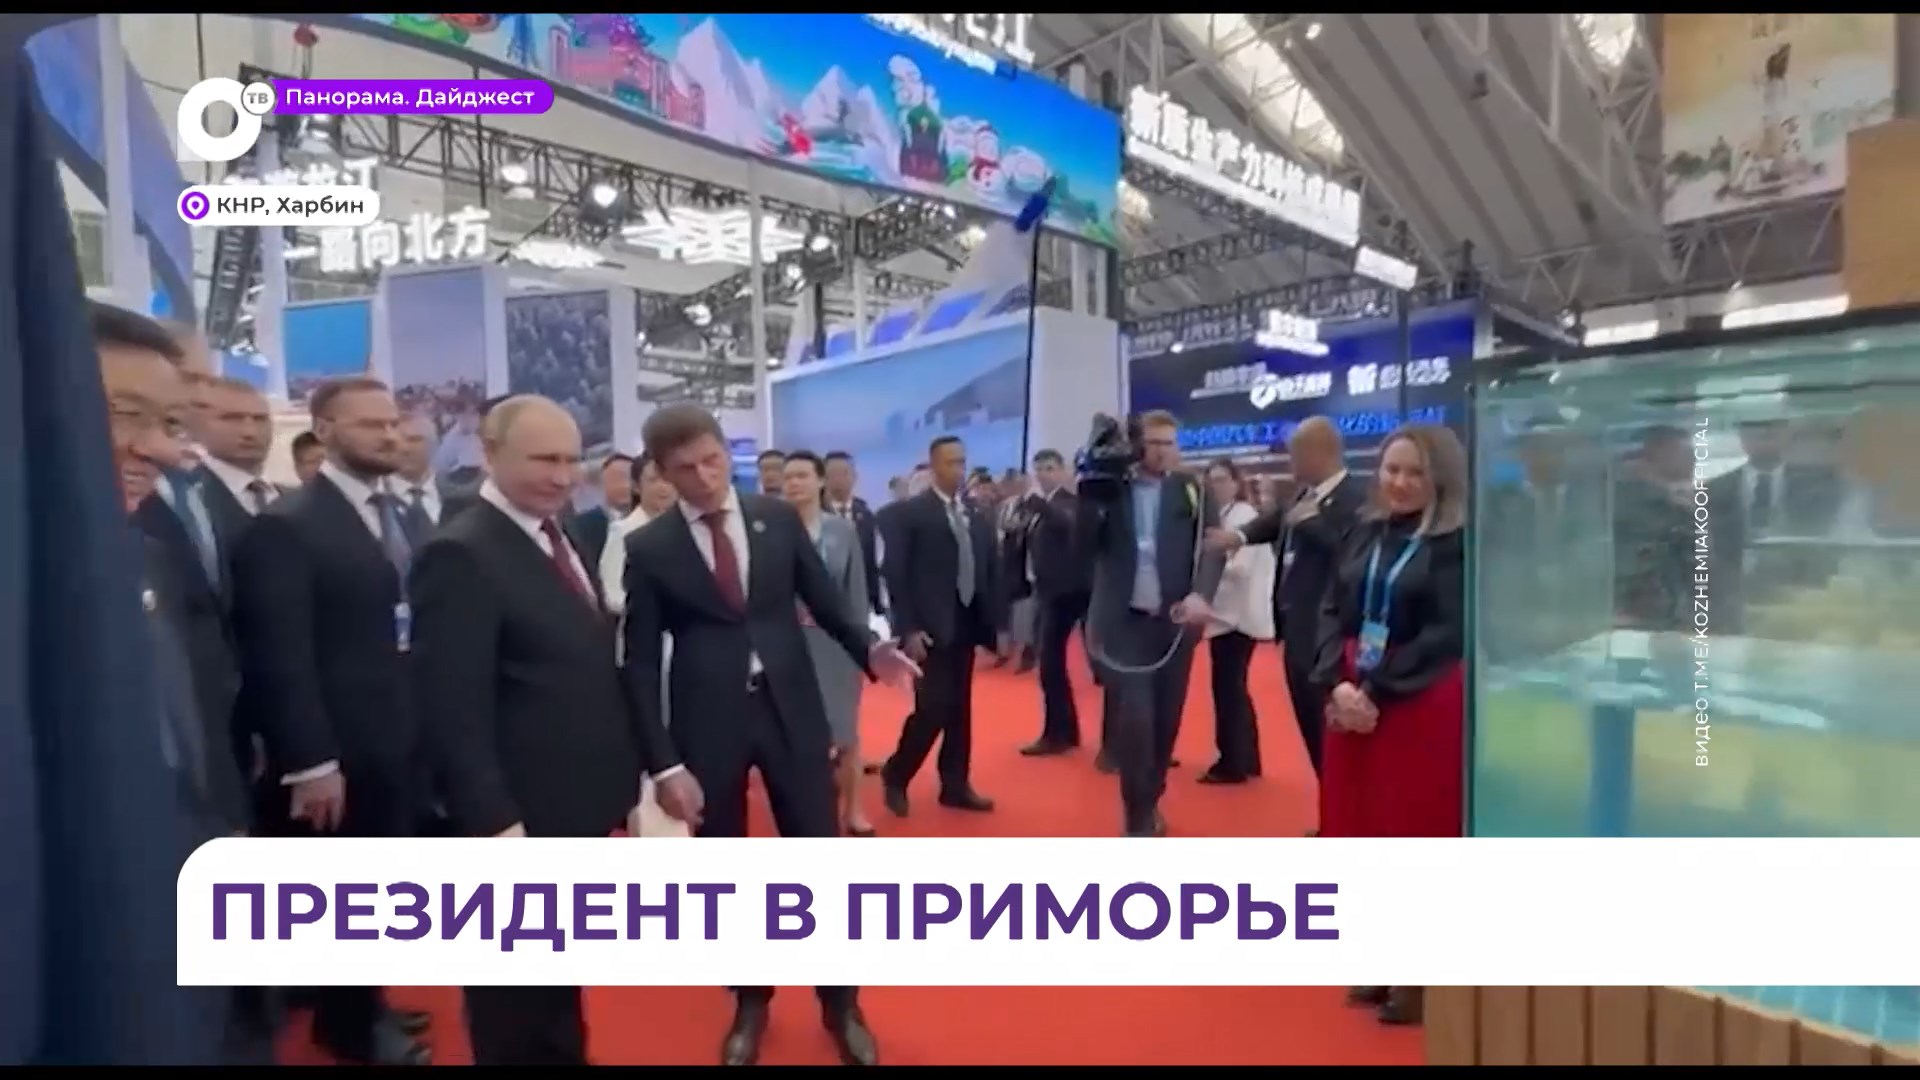 Владимир Путин стал первым гостем павильона Приморья на ЭКСПО в Харбине